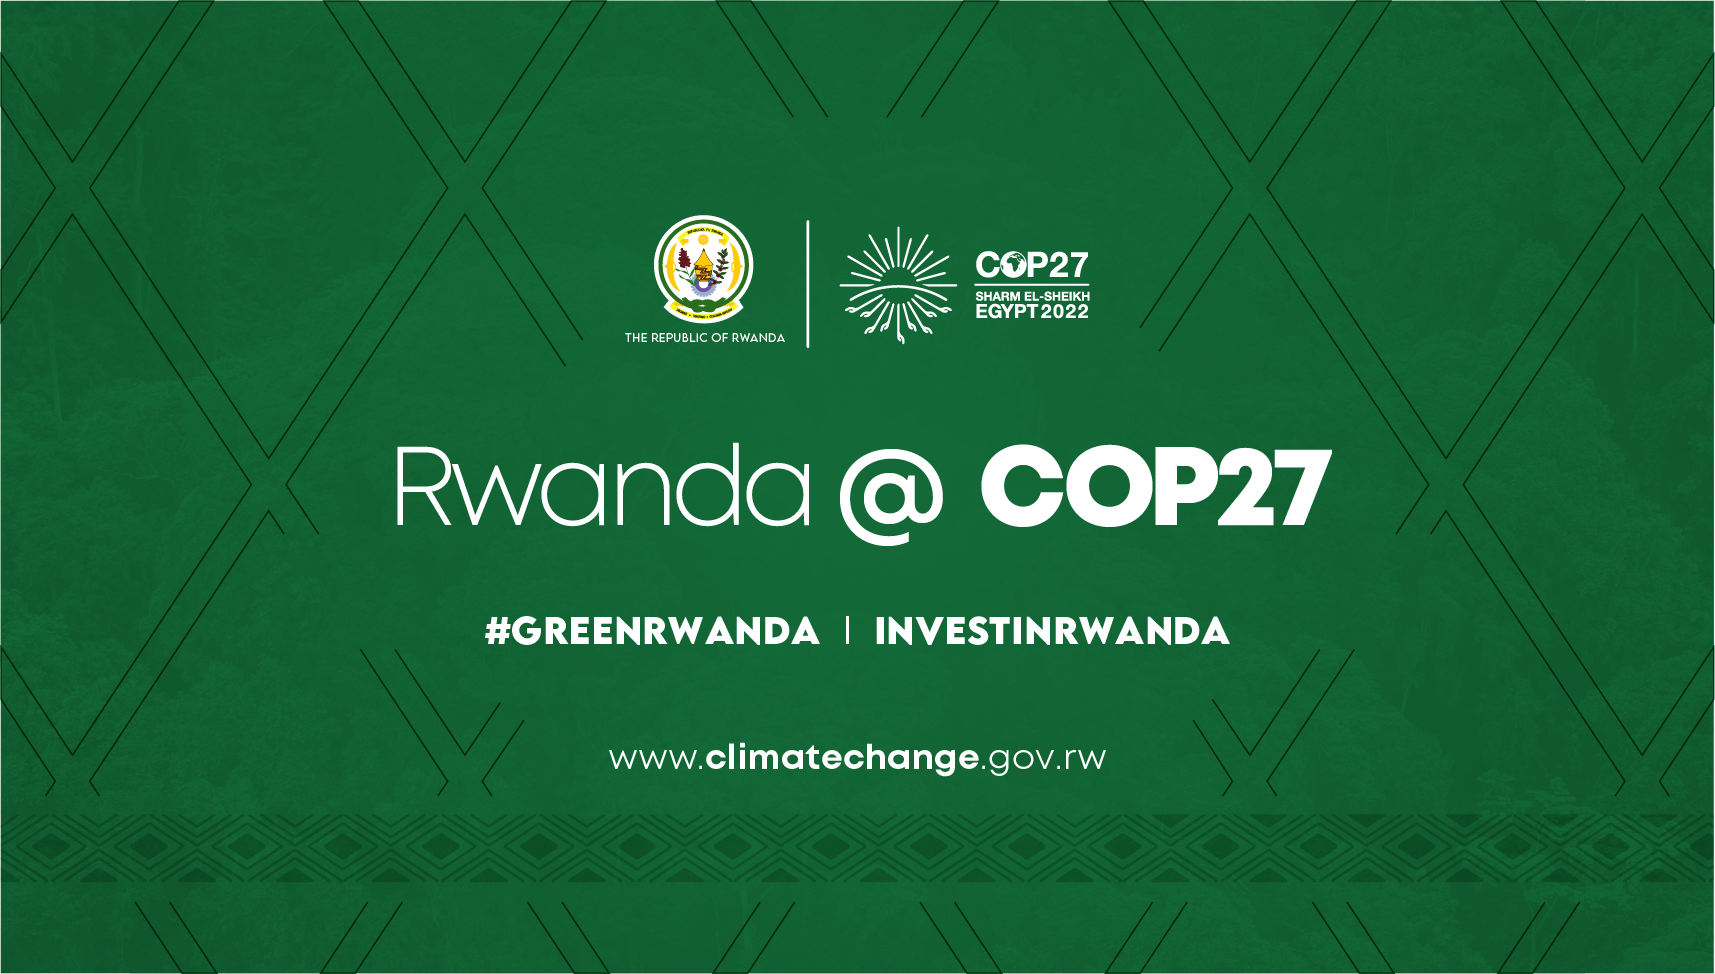 Rwanda at COP27